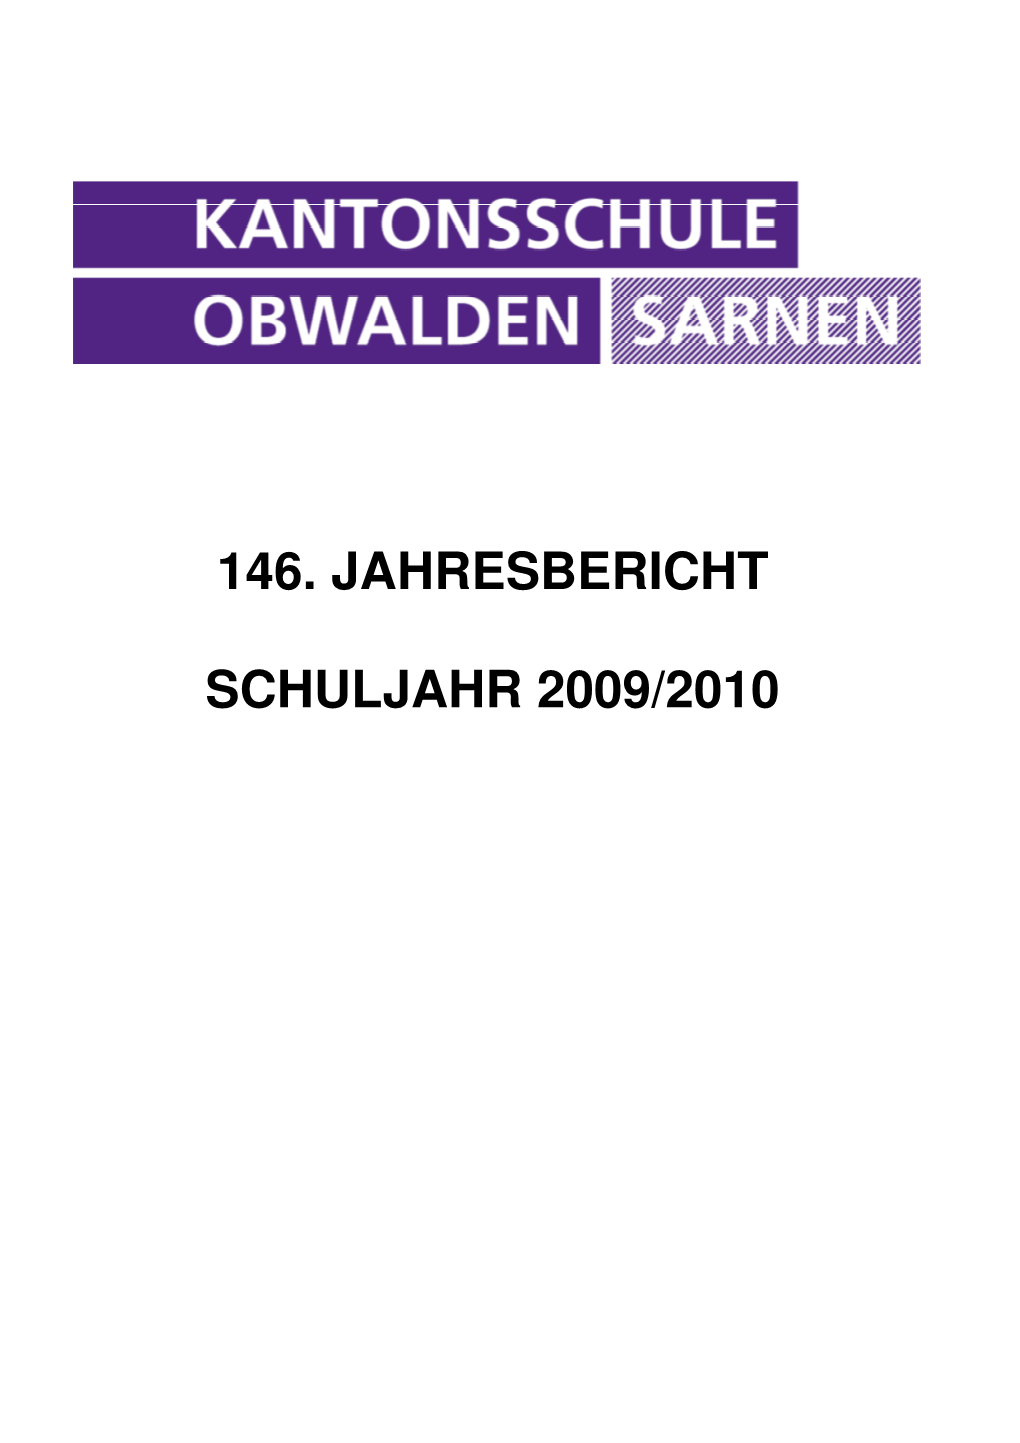 KSO Jahresbericht 2009-10.Pdf (164